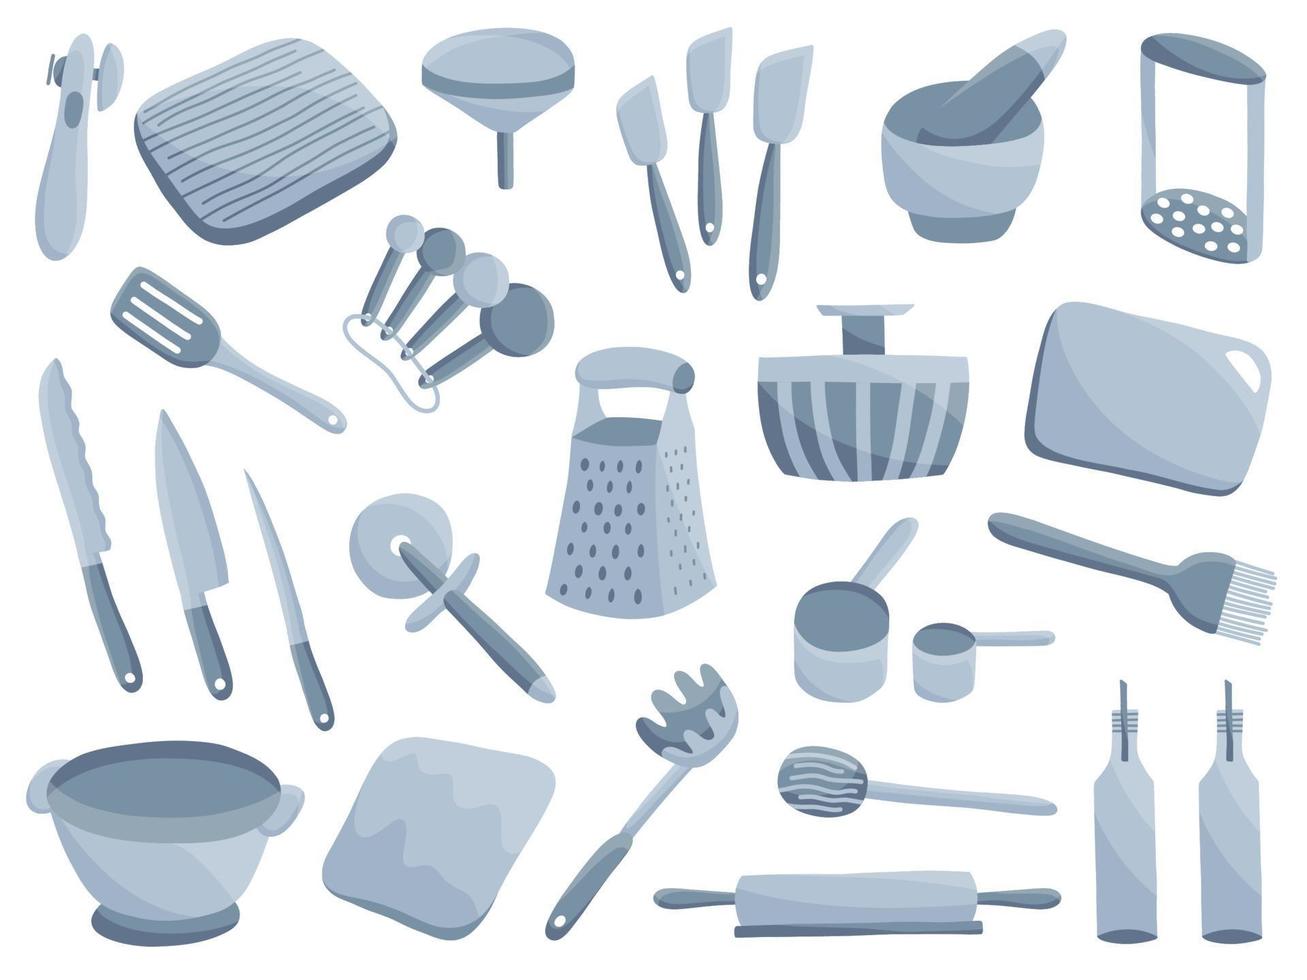 juegos de herramientas de cocina pala, cuchillo, espátula, tabla de cortar, trituradora, embudo, rallador, rodillo, cucharas, tazas. colección de utensilios de cocina. vector